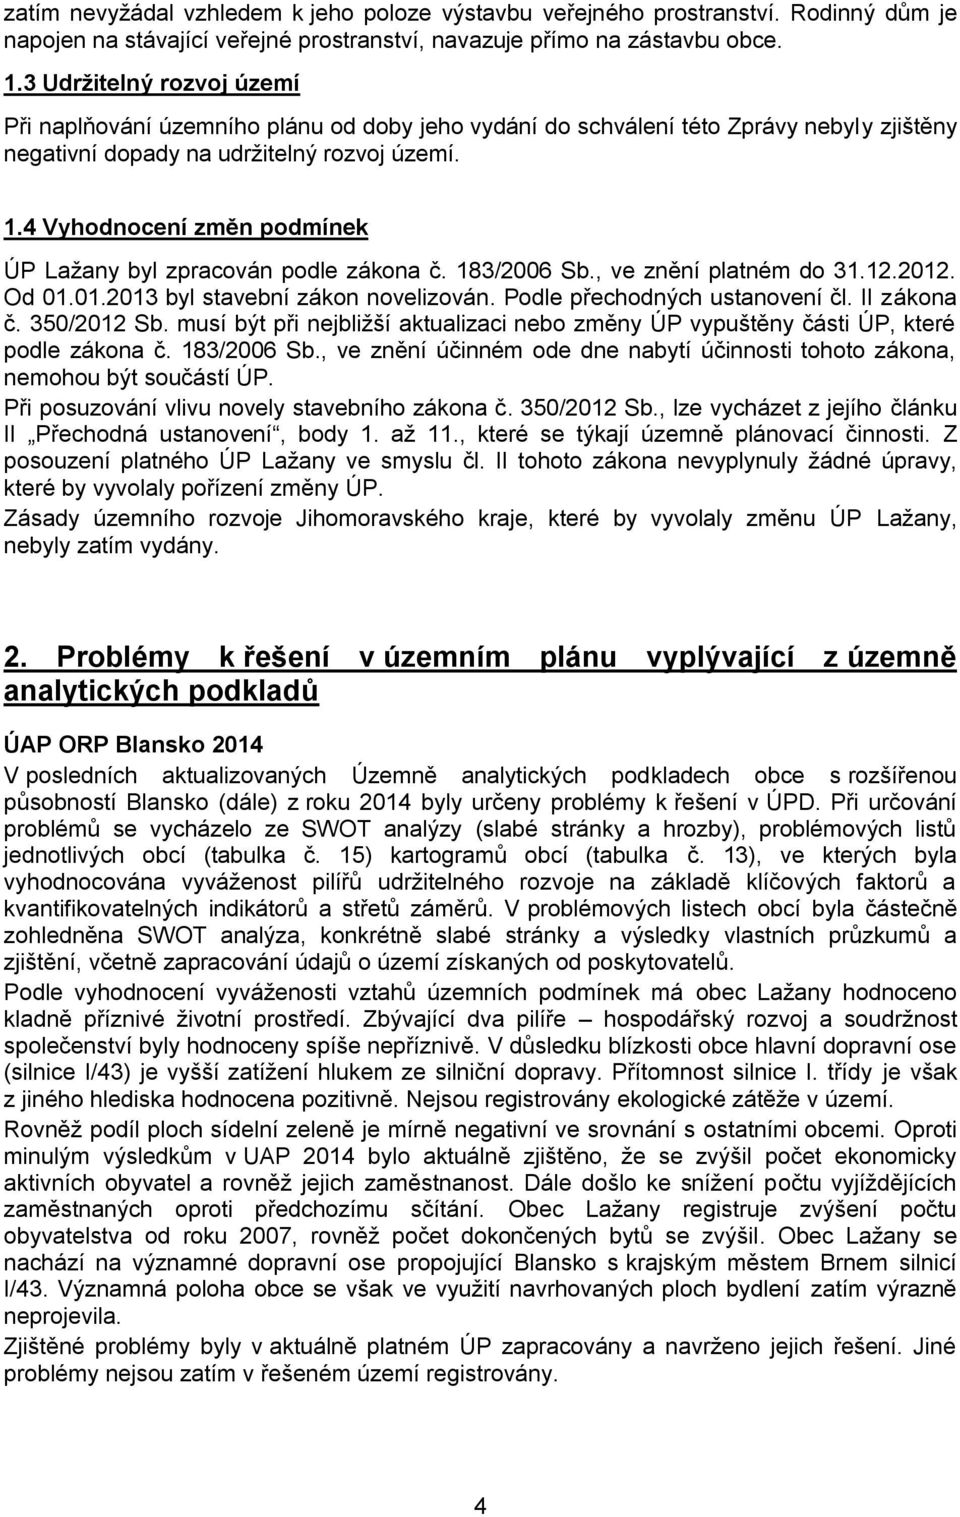 4 Vyhodnocení změn podmínek ÚP Laţany byl zpracován podle zákona č. 183/2006 Sb., ve znění platném do 31.12.2012. Od 01.01.2013 byl stavební zákon novelizován. Podle přechodných ustanovení čl.